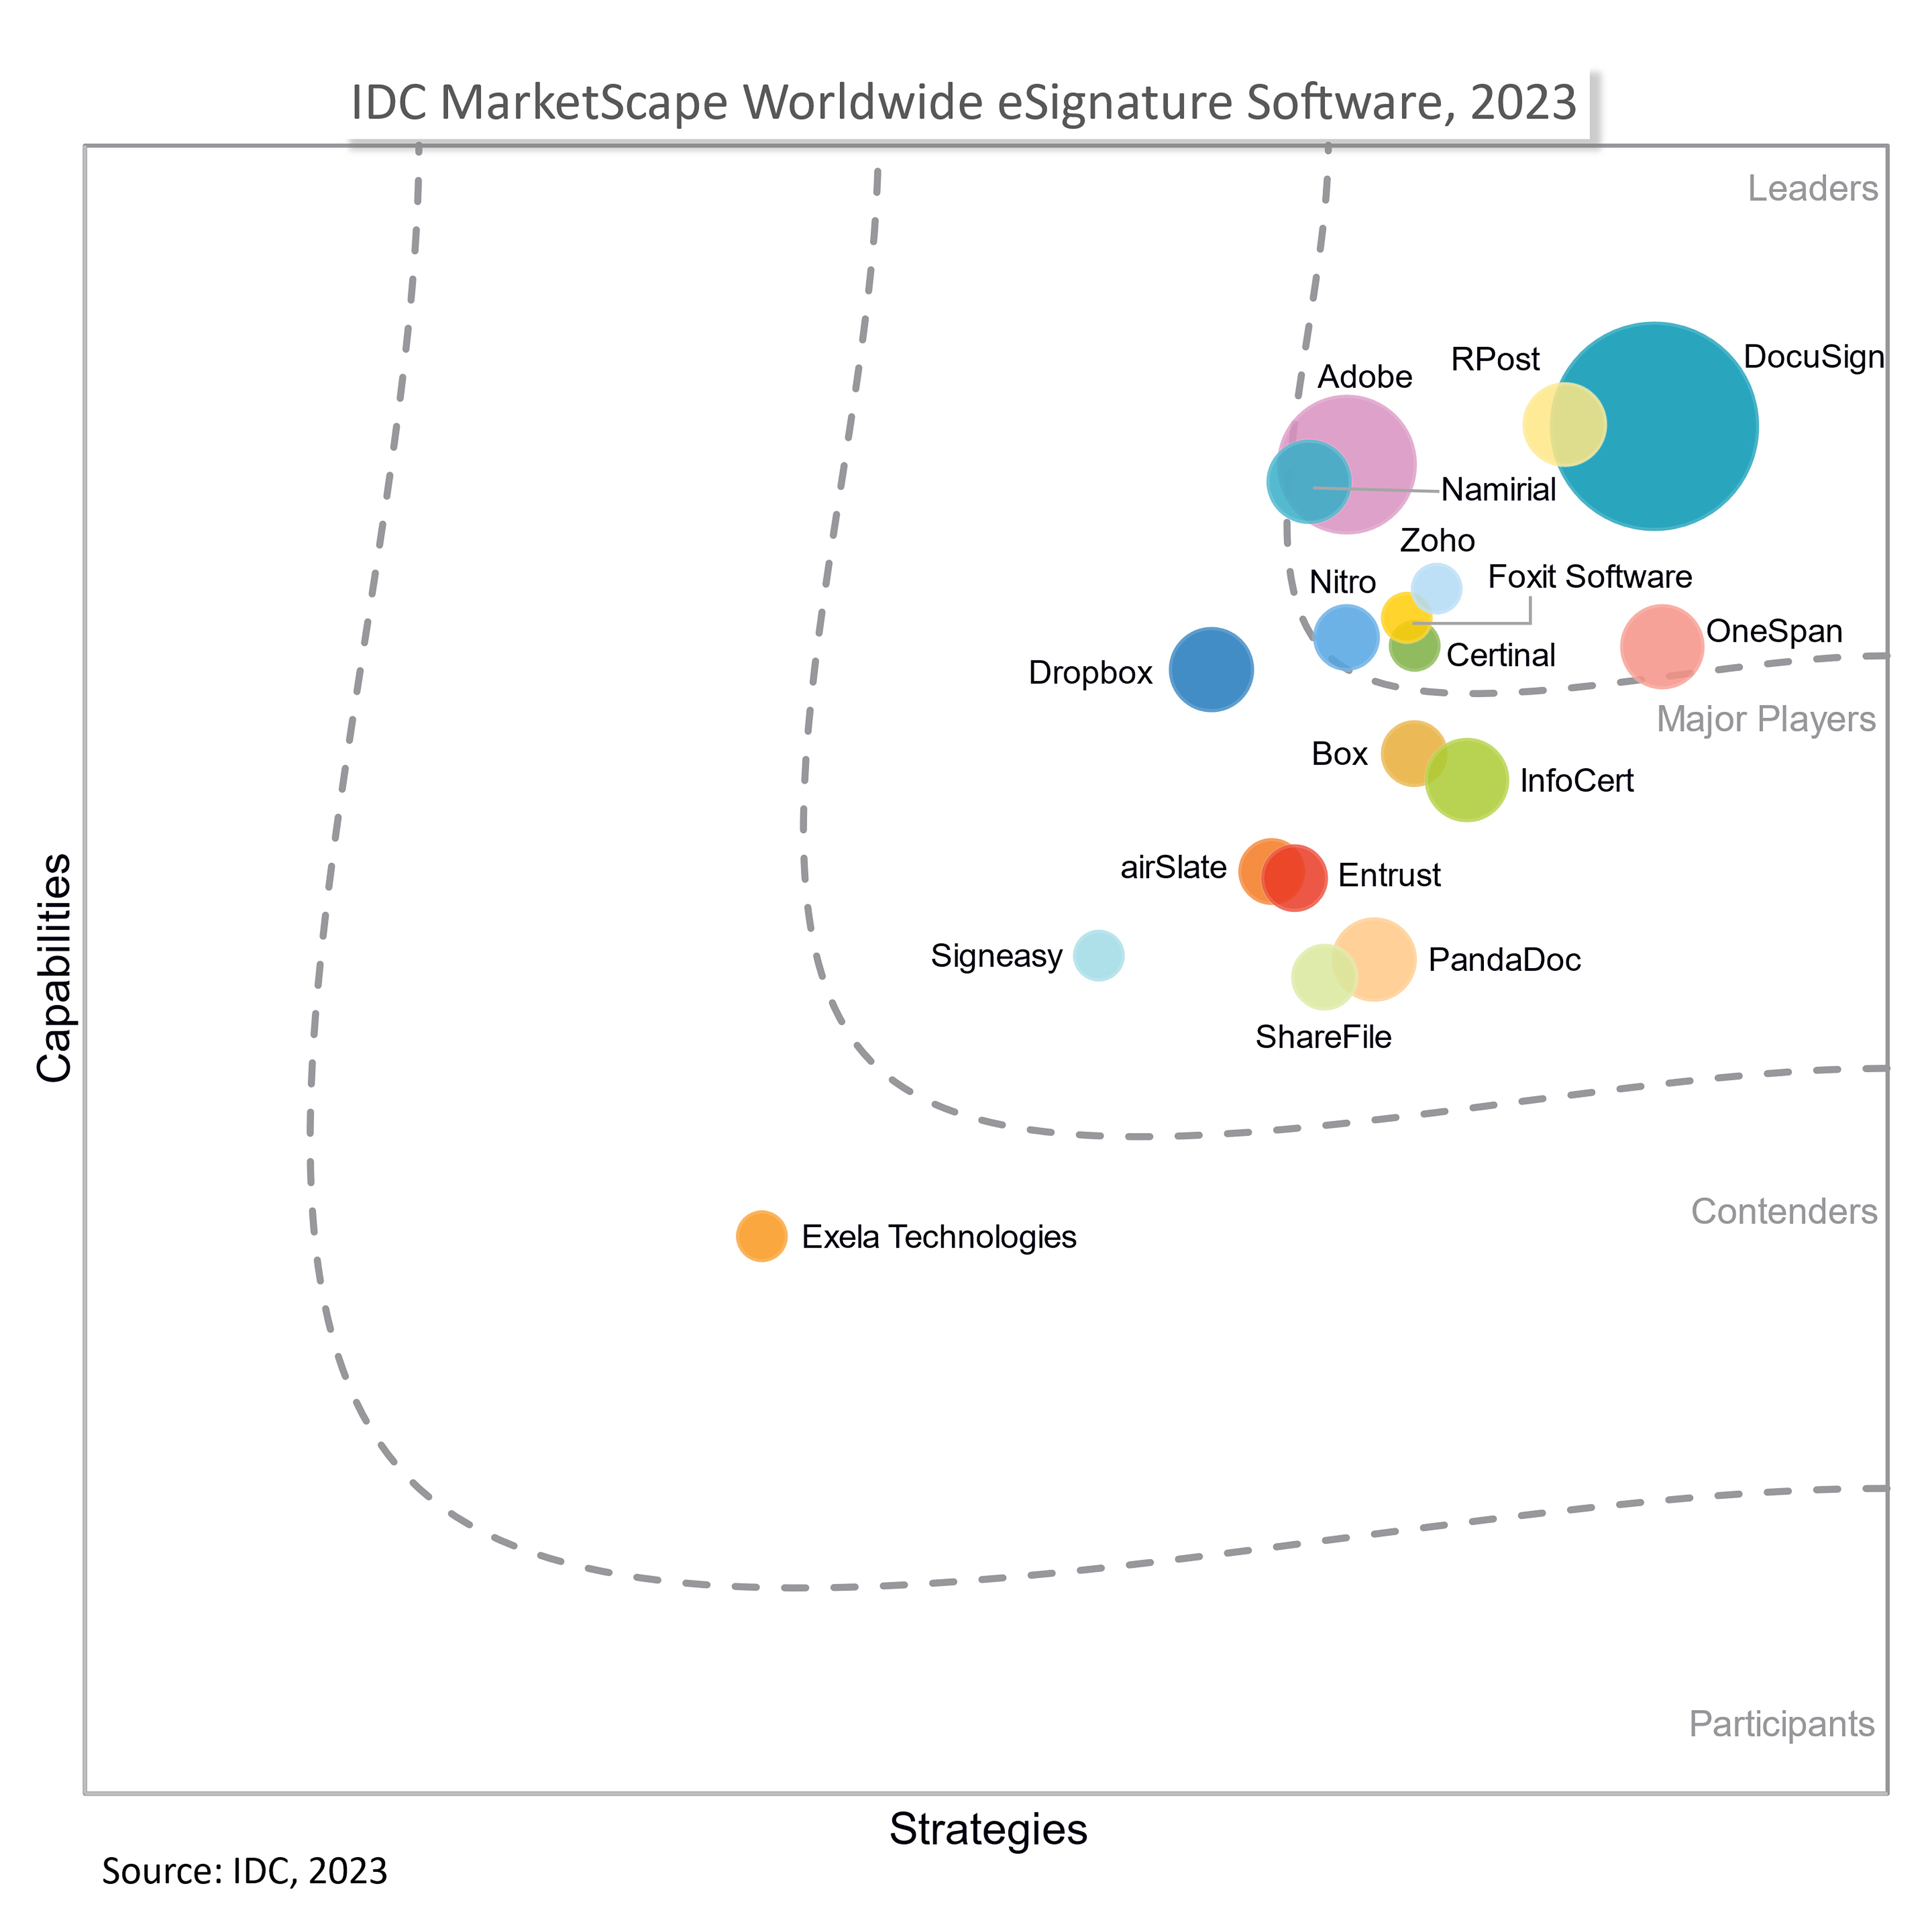 IDC MarketScape eSignature Software 2023